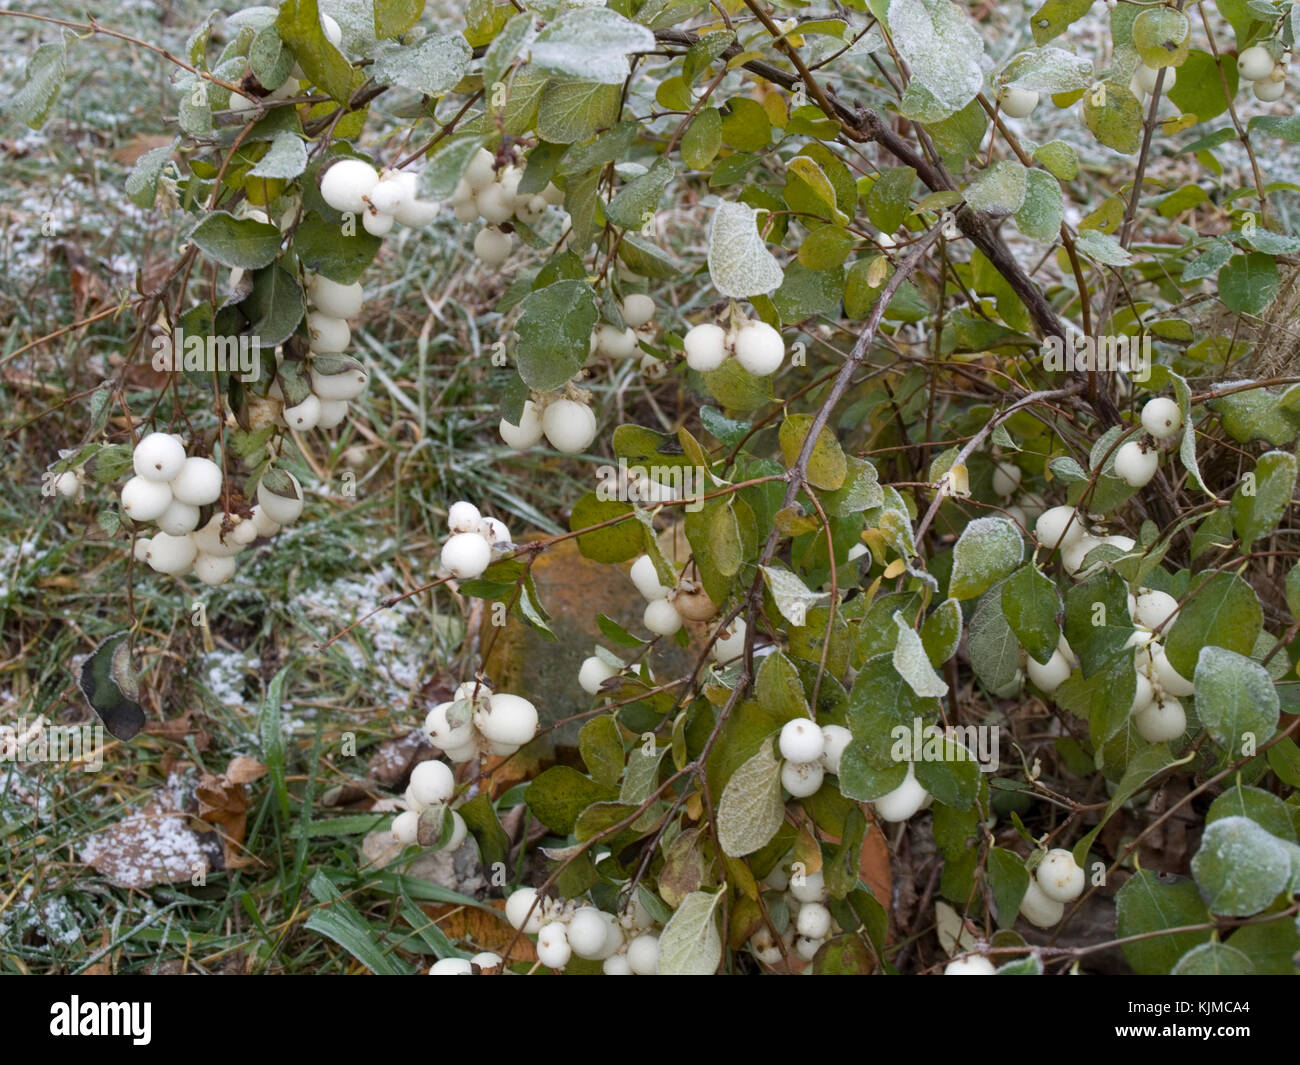 Snowberry shrub in late autumn Stock Photo